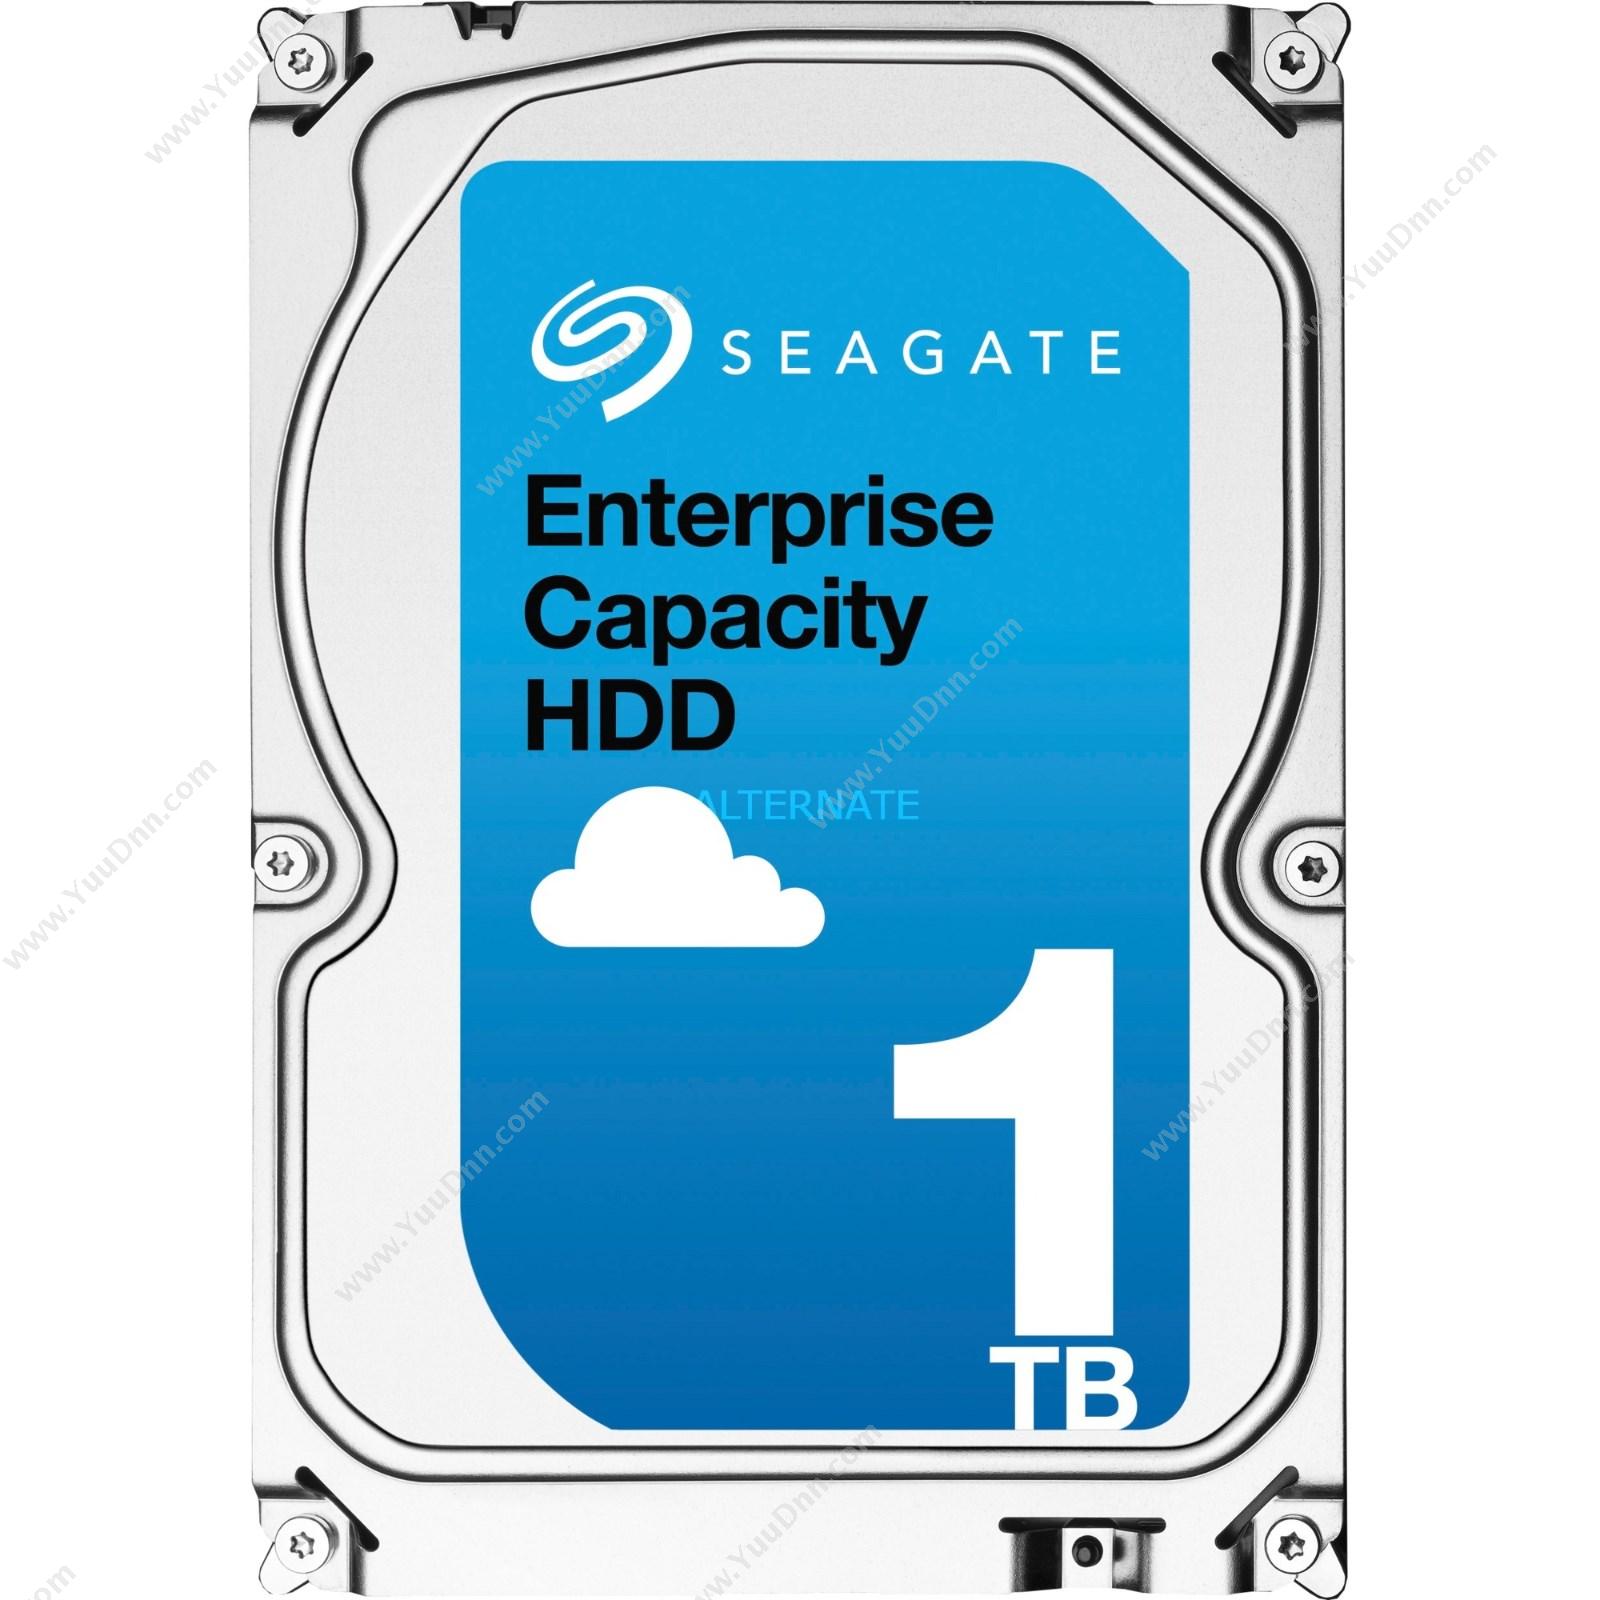 希捷 SeagateV5系列1TBSAS企业级（ST1000NM0045）硬盘